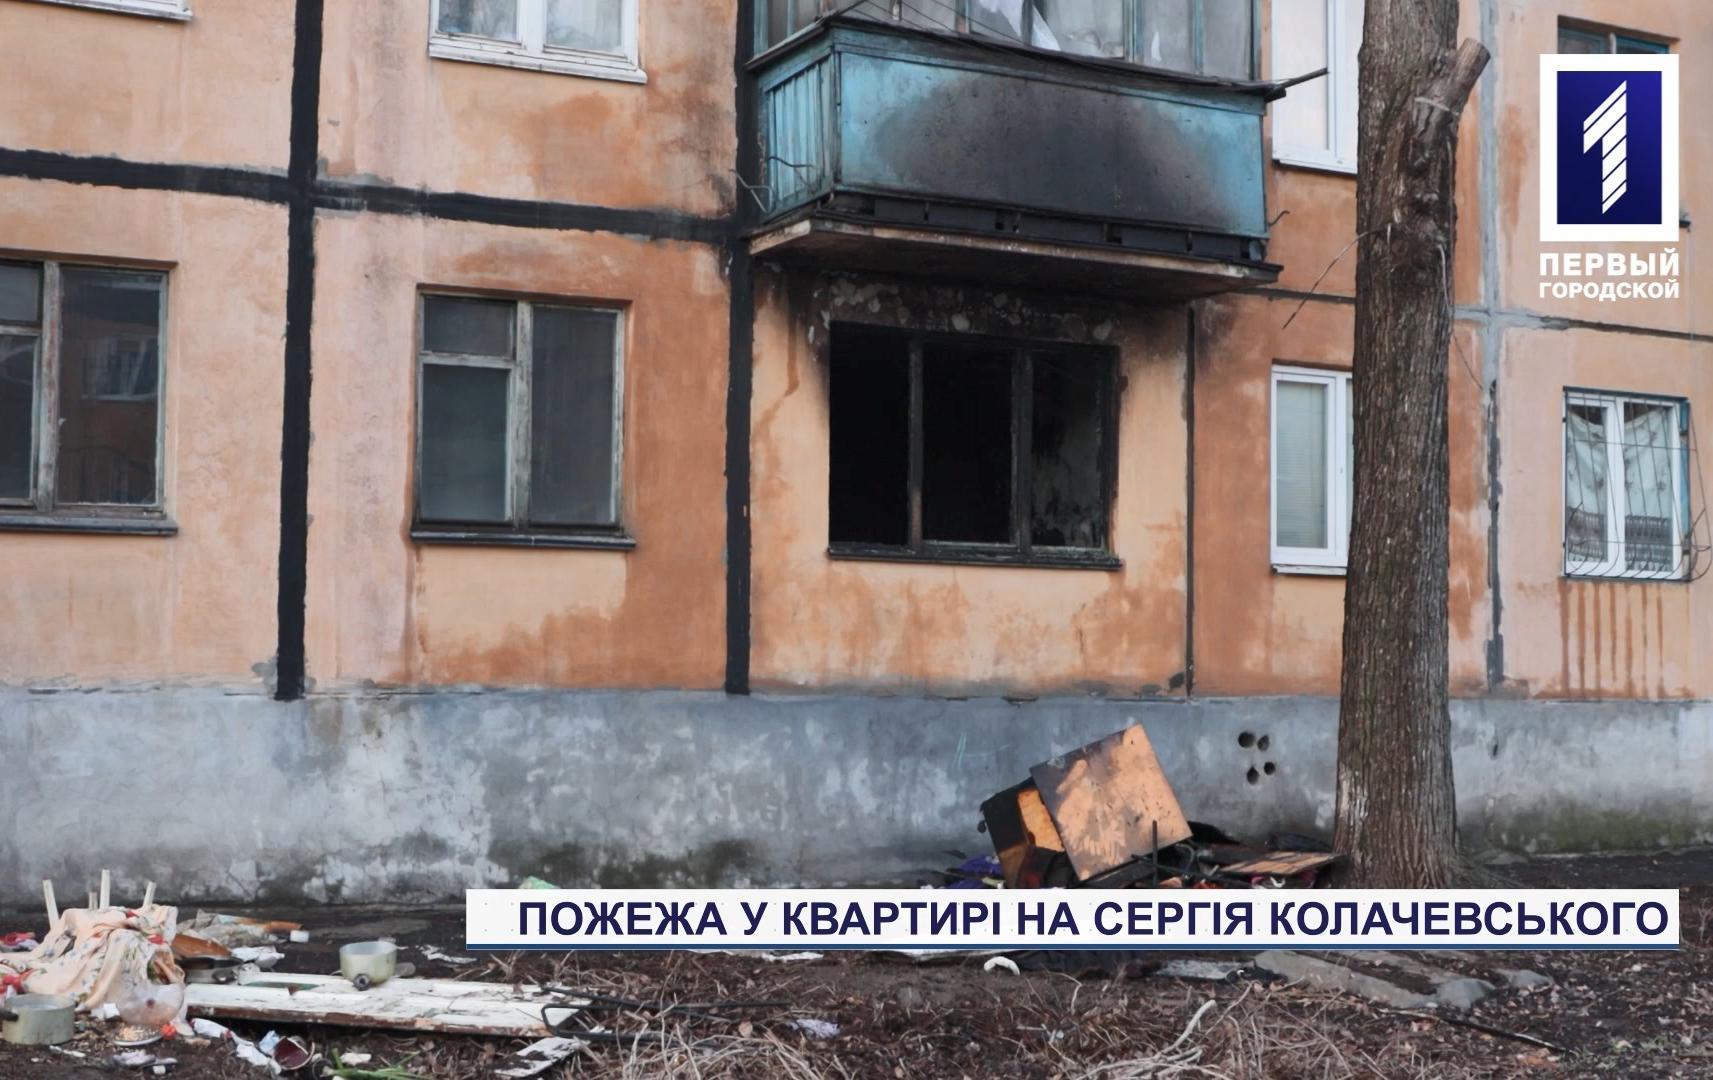 Новини Кривого Рогу: вигоріла квартира на вулиці Сергія Колачевького